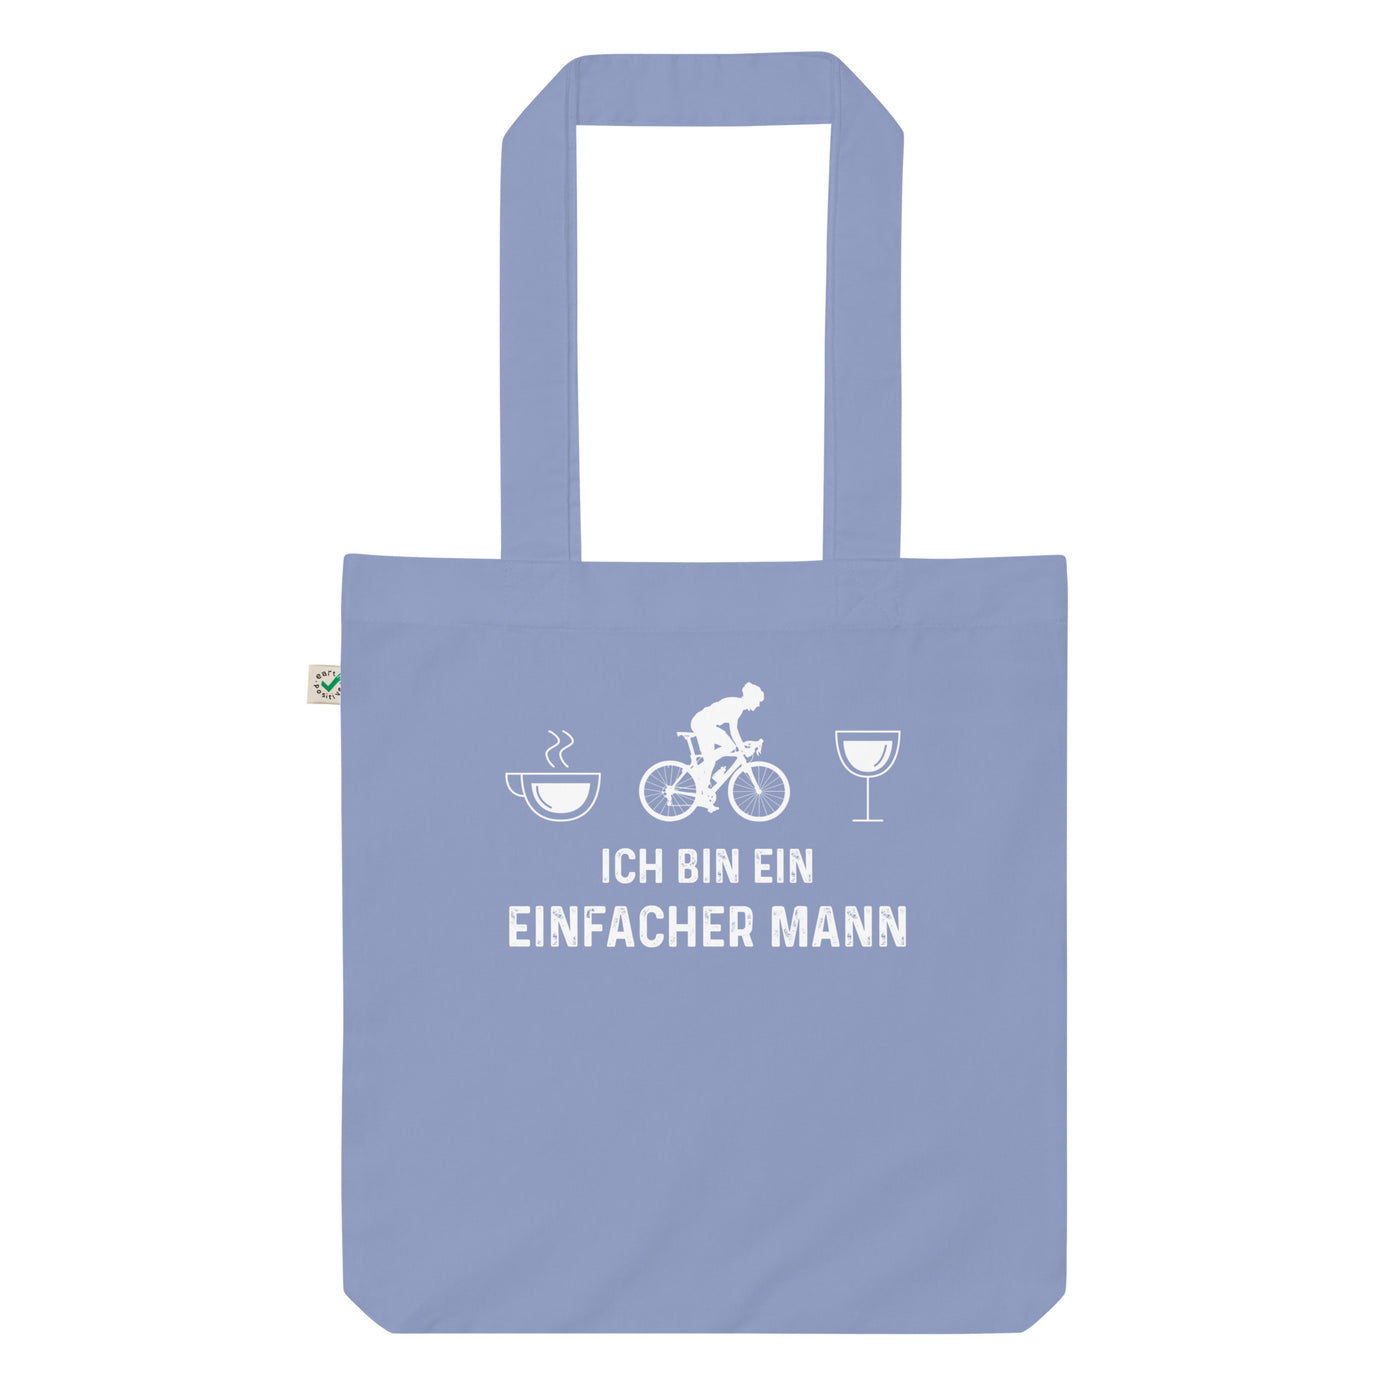 Ich Bin Ein Einfacher Mann 1 - Organic Einkaufstasche fahrrad Light Denim